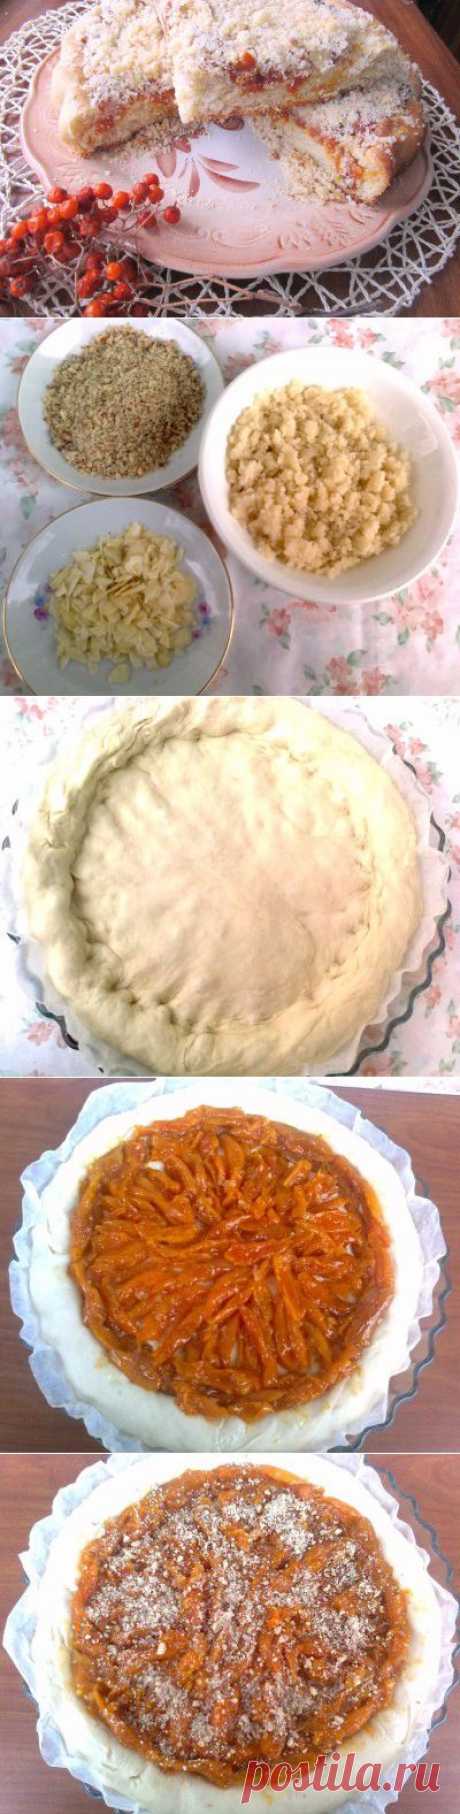 Постный пирог с курагой, миндалём и (постным) штрейзелем : Вегетарианская и постная кухня